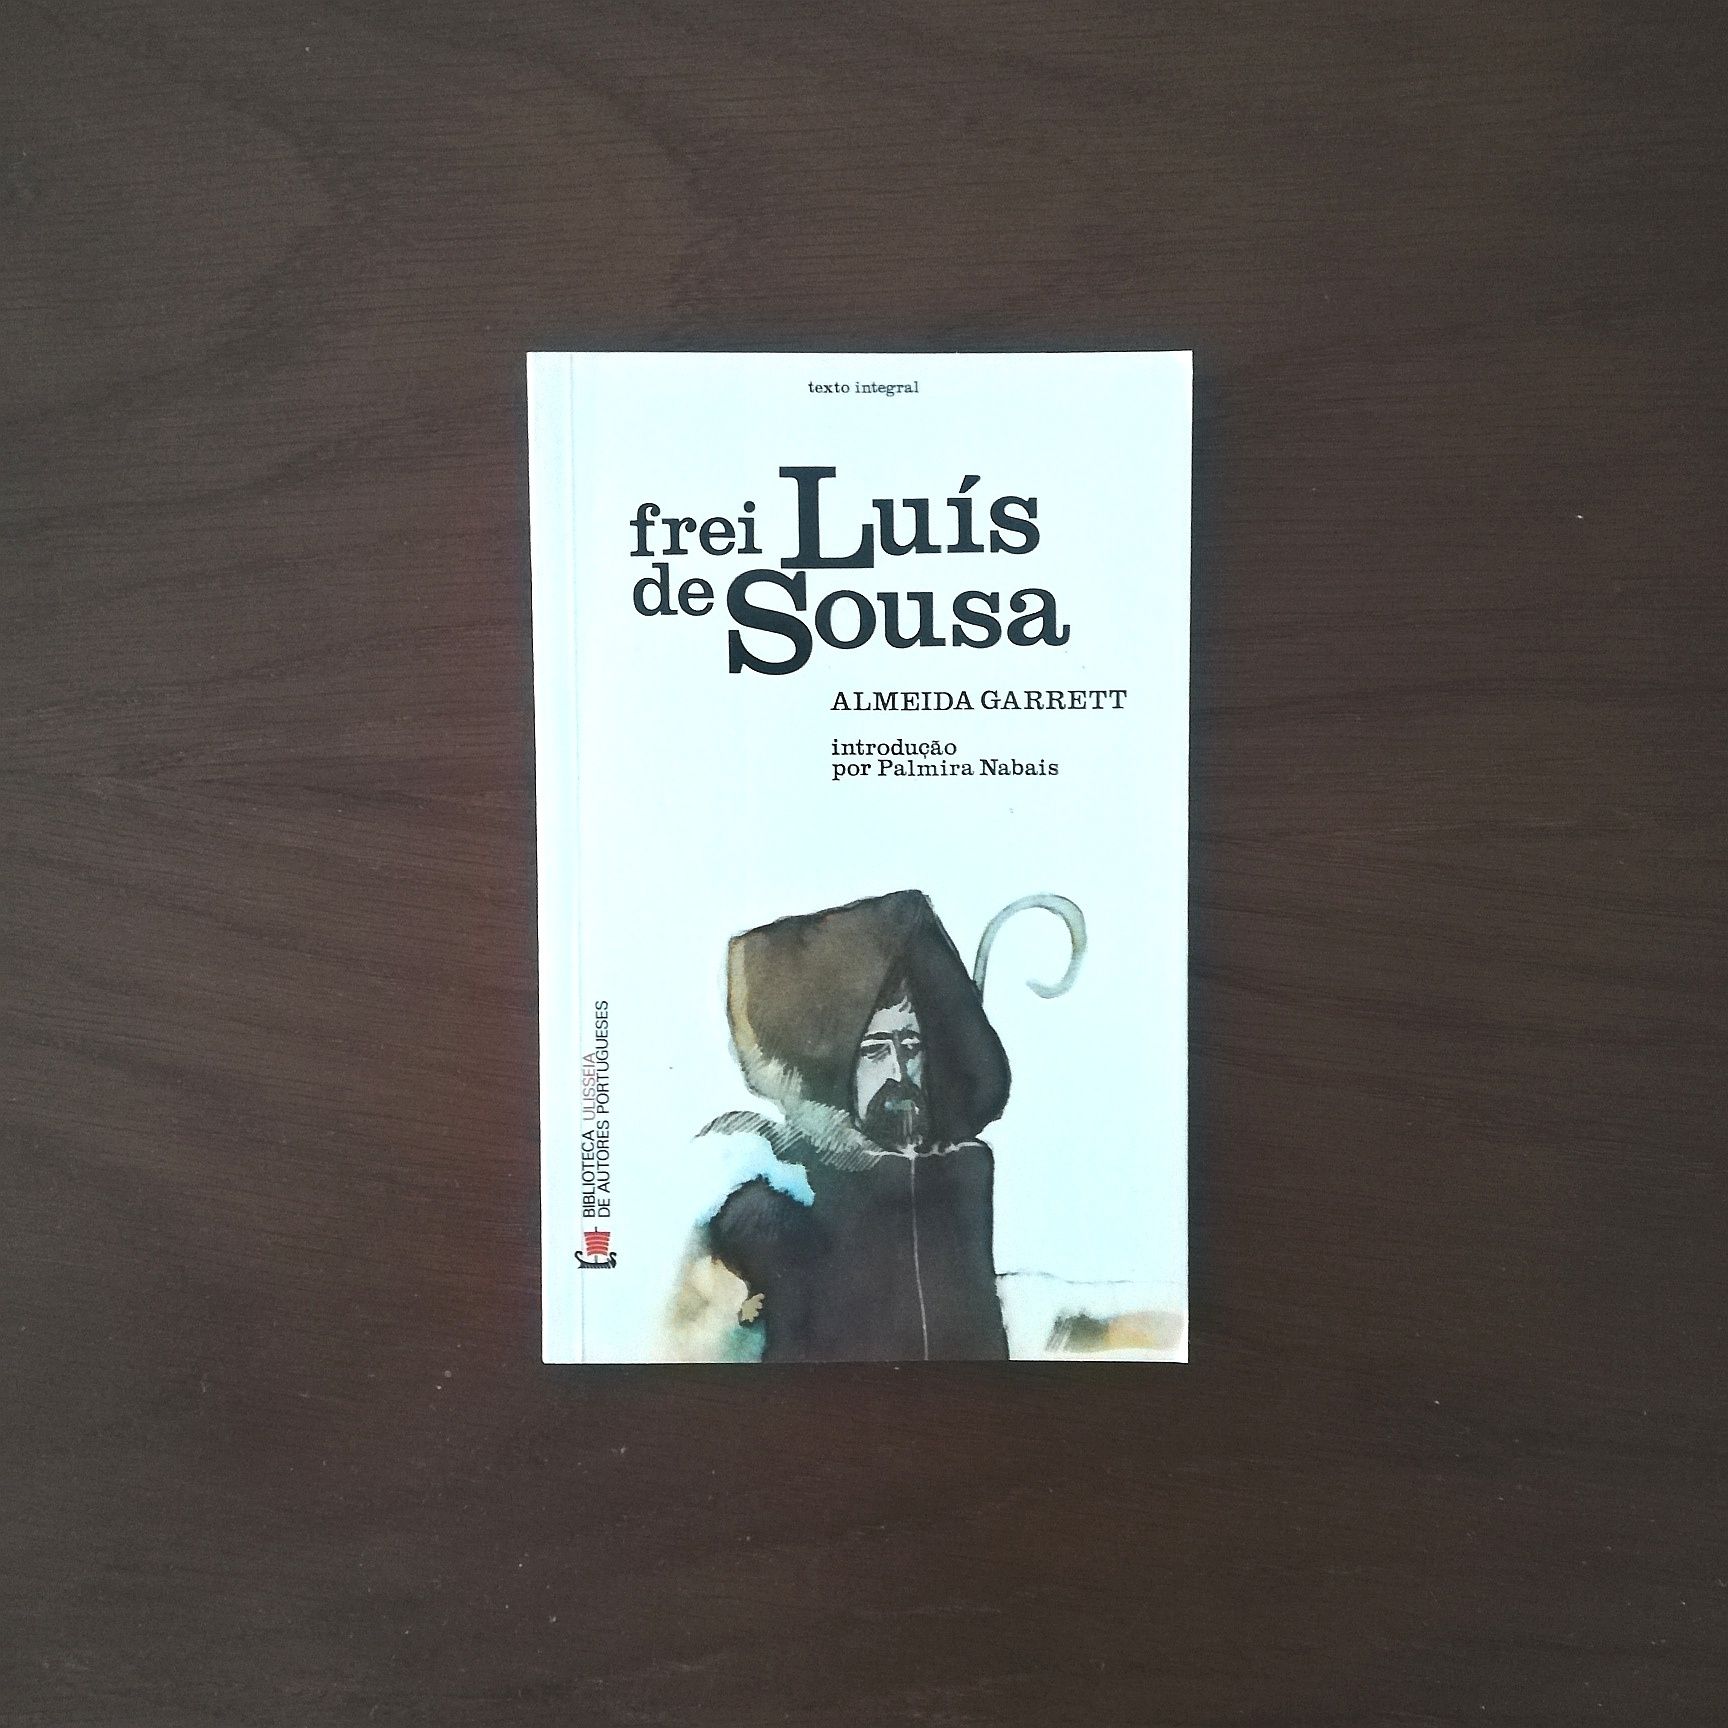 "Frei Luís de Sousa", Almeida Garrett